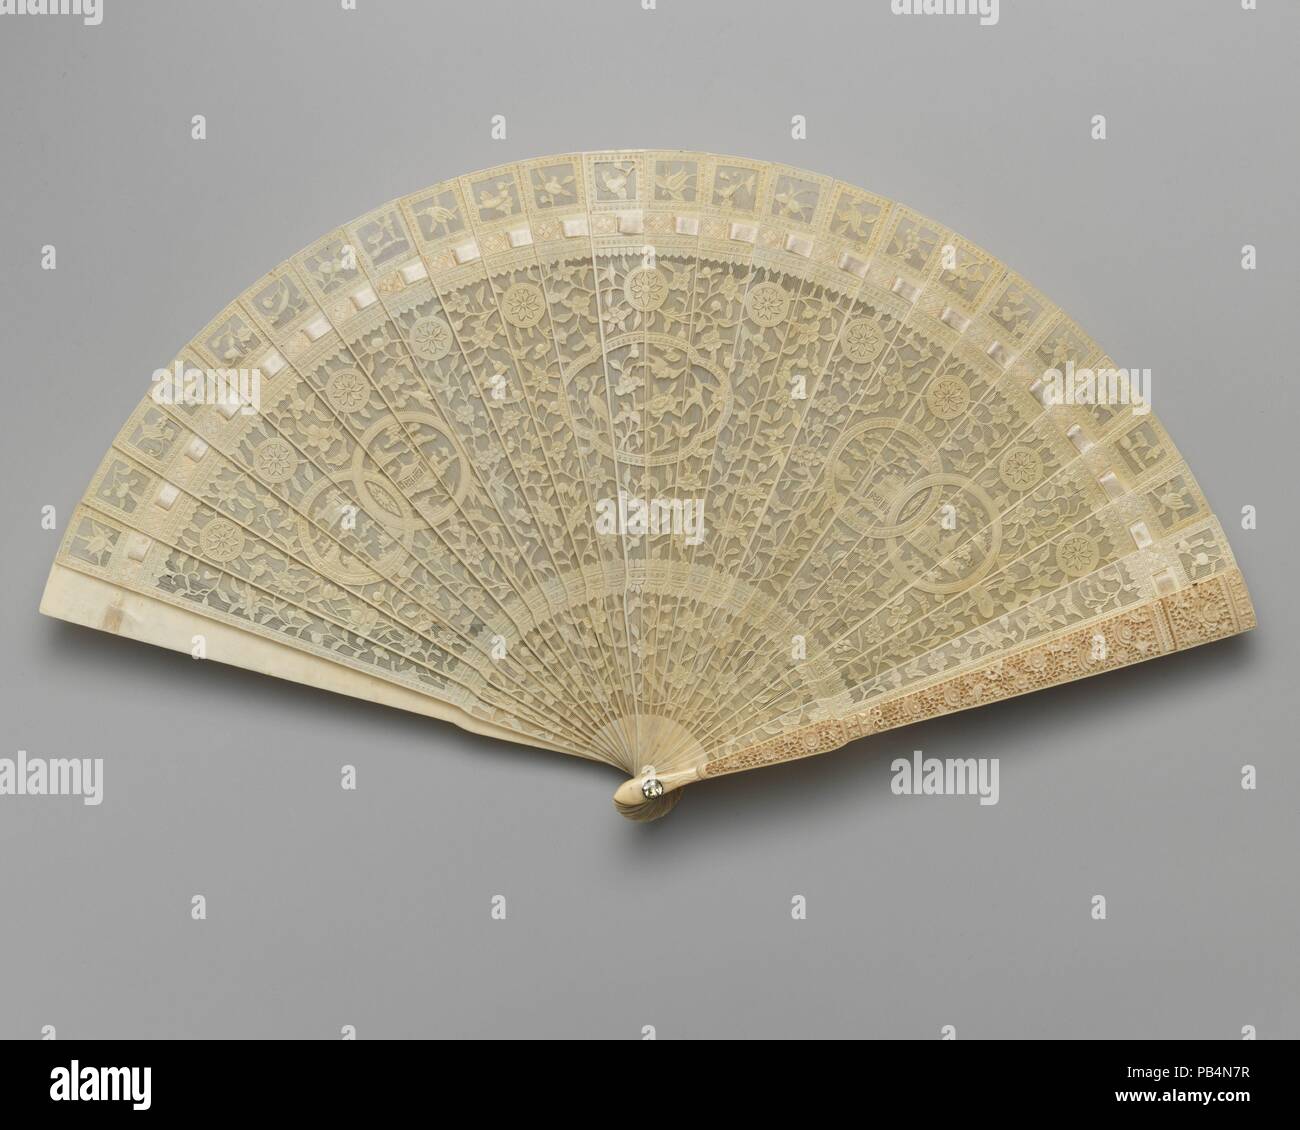 Ventilateur. Culture : le chinois. Dimensions : 8 1/4 x 15 1/4 in. (21 x 38,7 cm). Date : fin du 18e siècle. Musée : Metropolitan Museum of Art, New York, USA. Banque D'Images